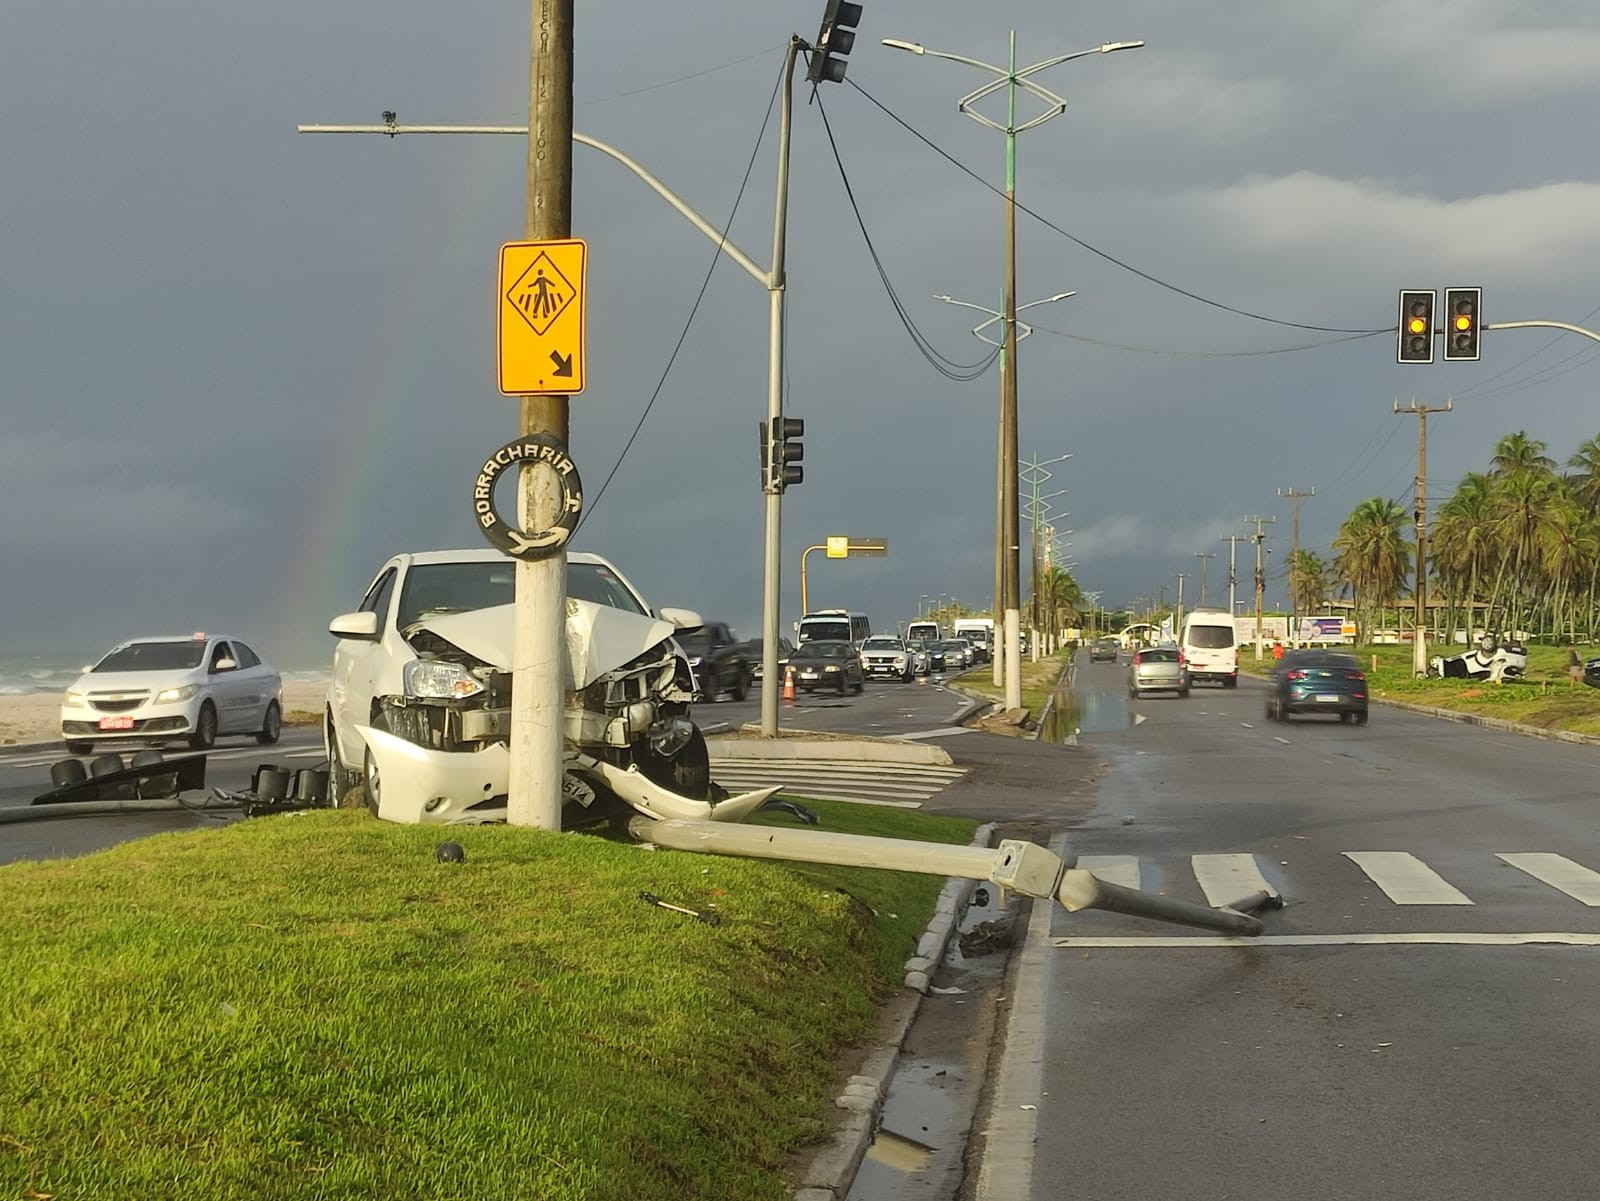 Motorista perde controle de carro, derruba semáforo, e outro carro capota ao desviar em Maceió